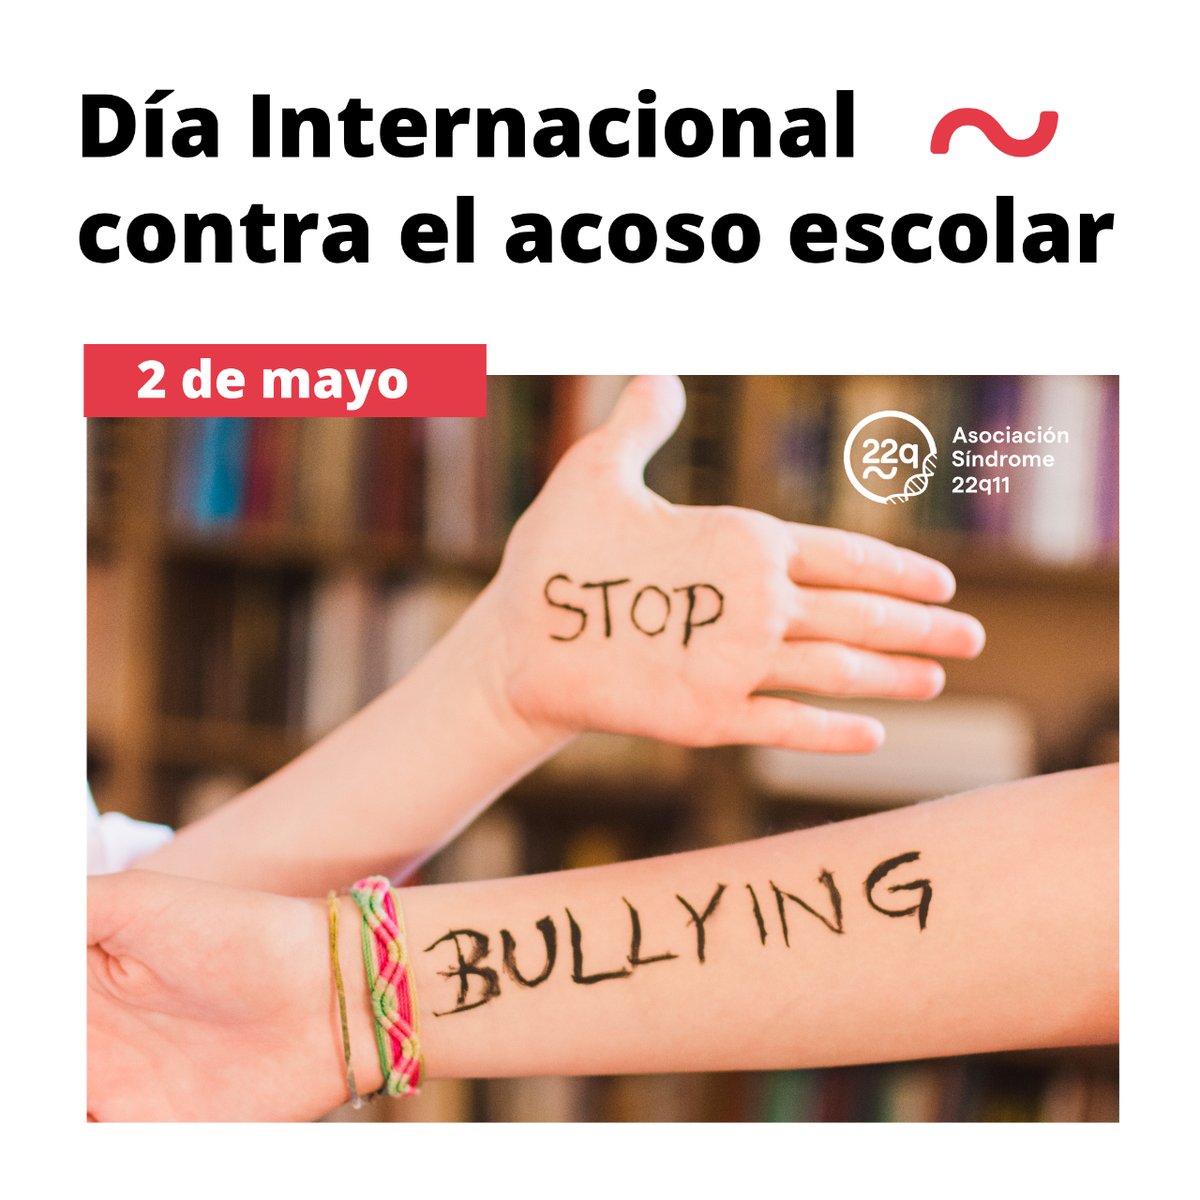 Hoy, 2 de mayo, es el 𝐃𝐢́𝐚 𝐈𝐧𝐭𝐞𝐫𝐧𝐚𝐜𝐢𝐨𝐧𝐚𝐥 𝐜𝐨𝐧𝐭𝐫𝐚 𝐞𝐥 𝐚𝐜𝐨𝐬𝐨 𝐞𝐬𝐜𝐨𝐥𝐚𝐫 🚫 Juntos, podemos crear conciencia, educar y trabajar para poner fin al acoso escolar en todas sus formas ✋ #hazvisible22q11 #stopbullying #22qenlasaulas #22q11 #acosoescolar